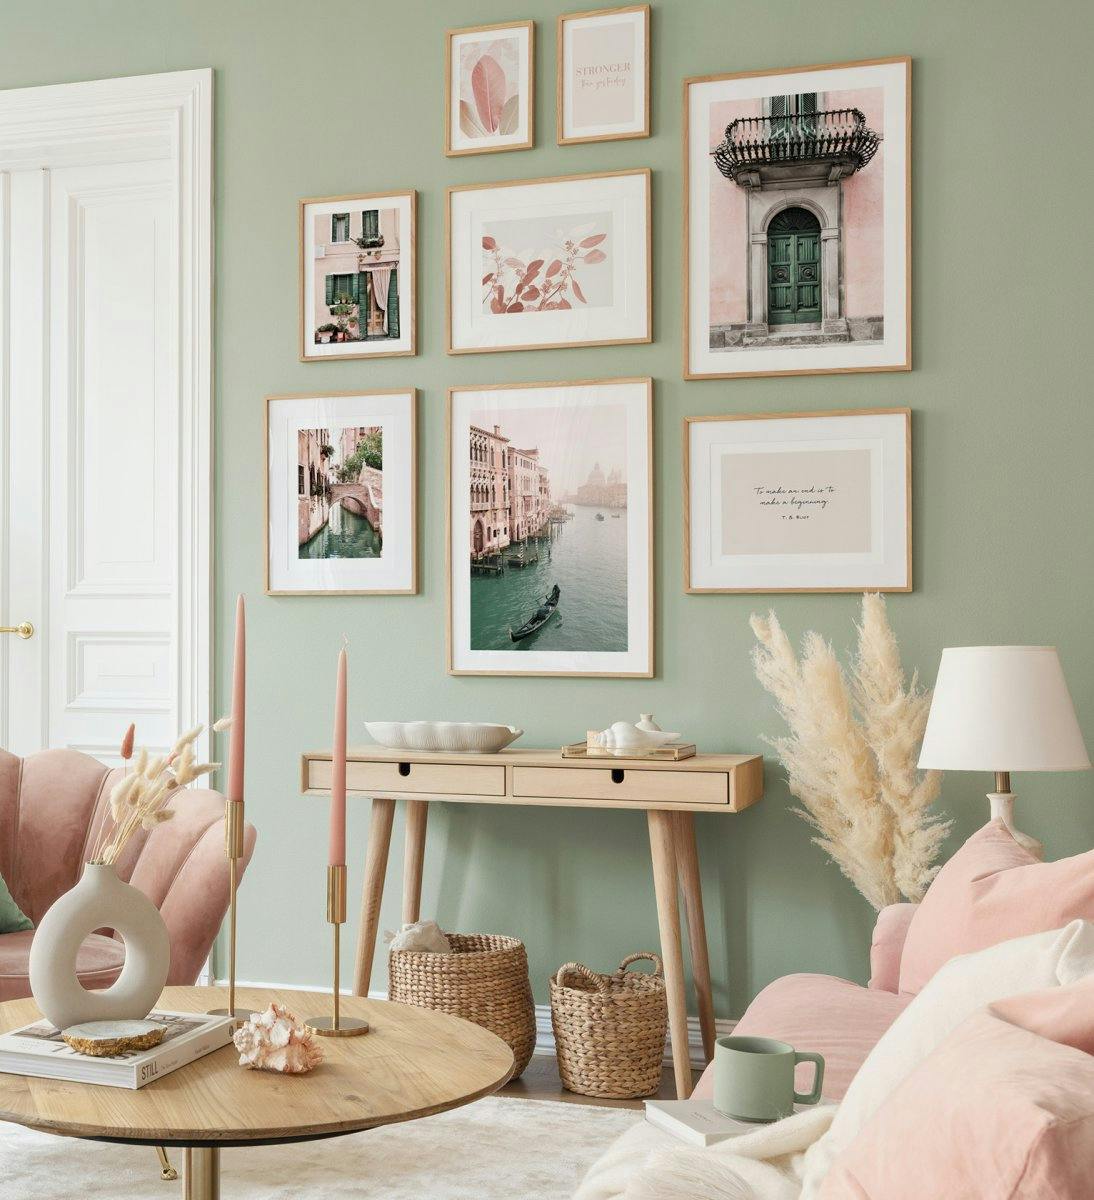 Tavelvägg med fotokonst i pastellfärger skapar en livfull stämning i vardagsrummet